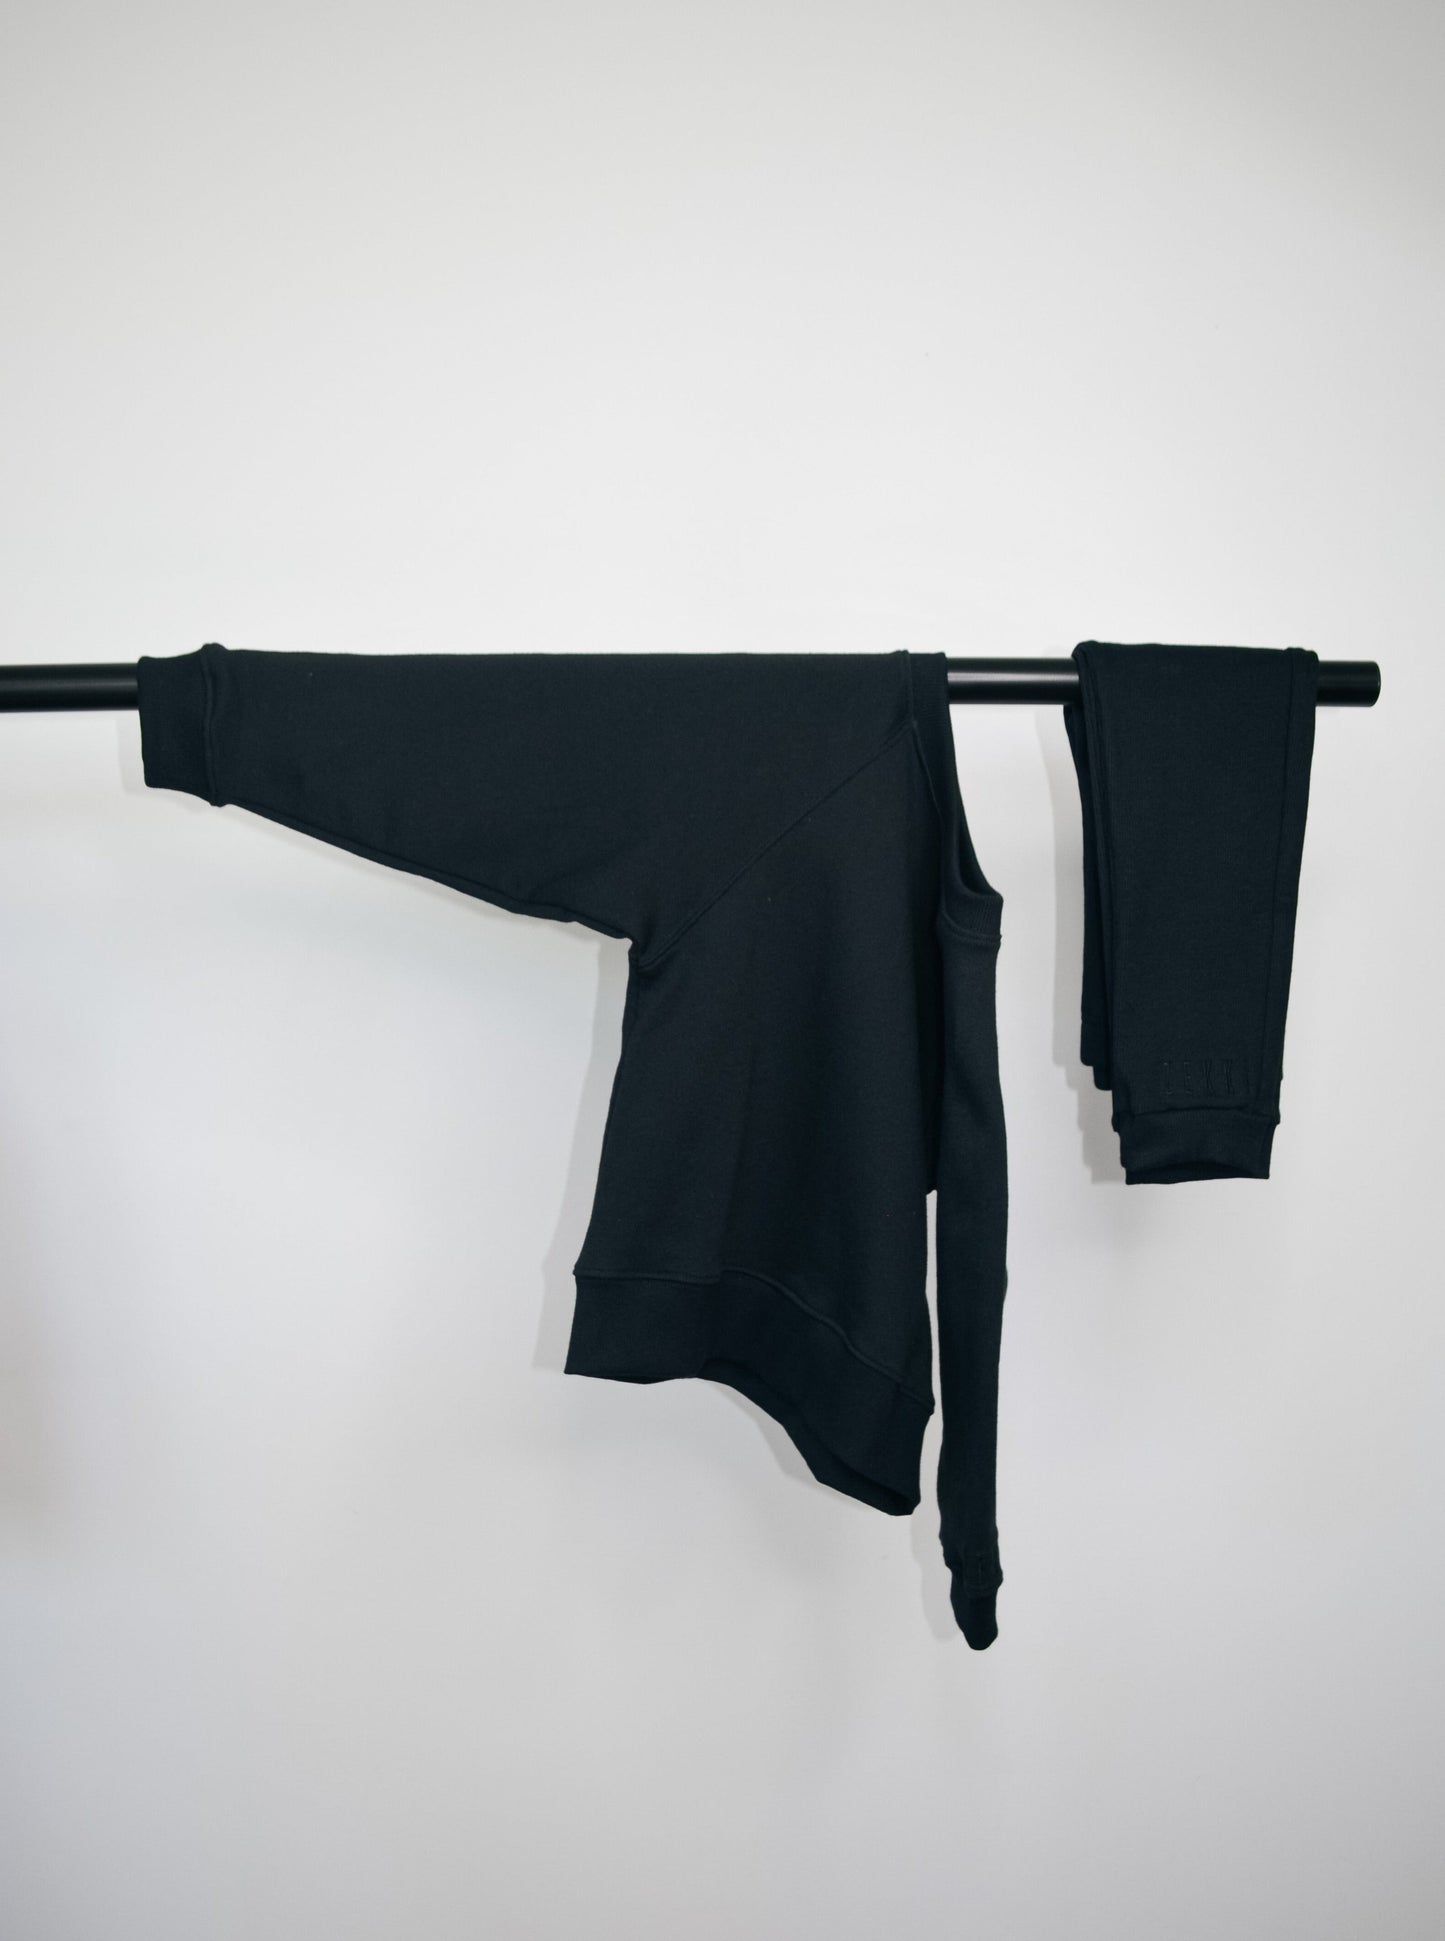 Black batwing jumper and black loose legging hanging on bar